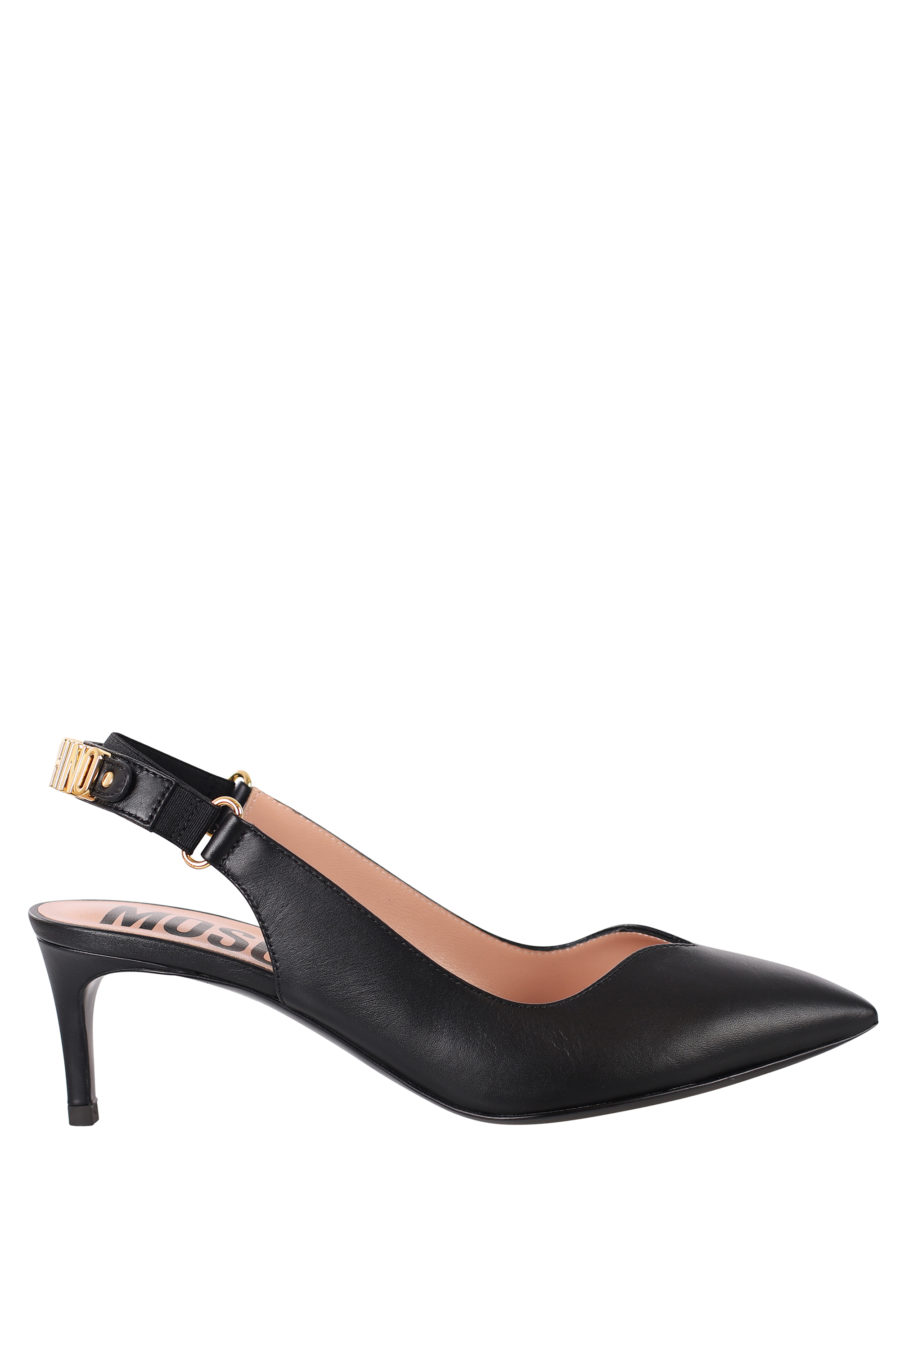 Black heels - IMG 0381